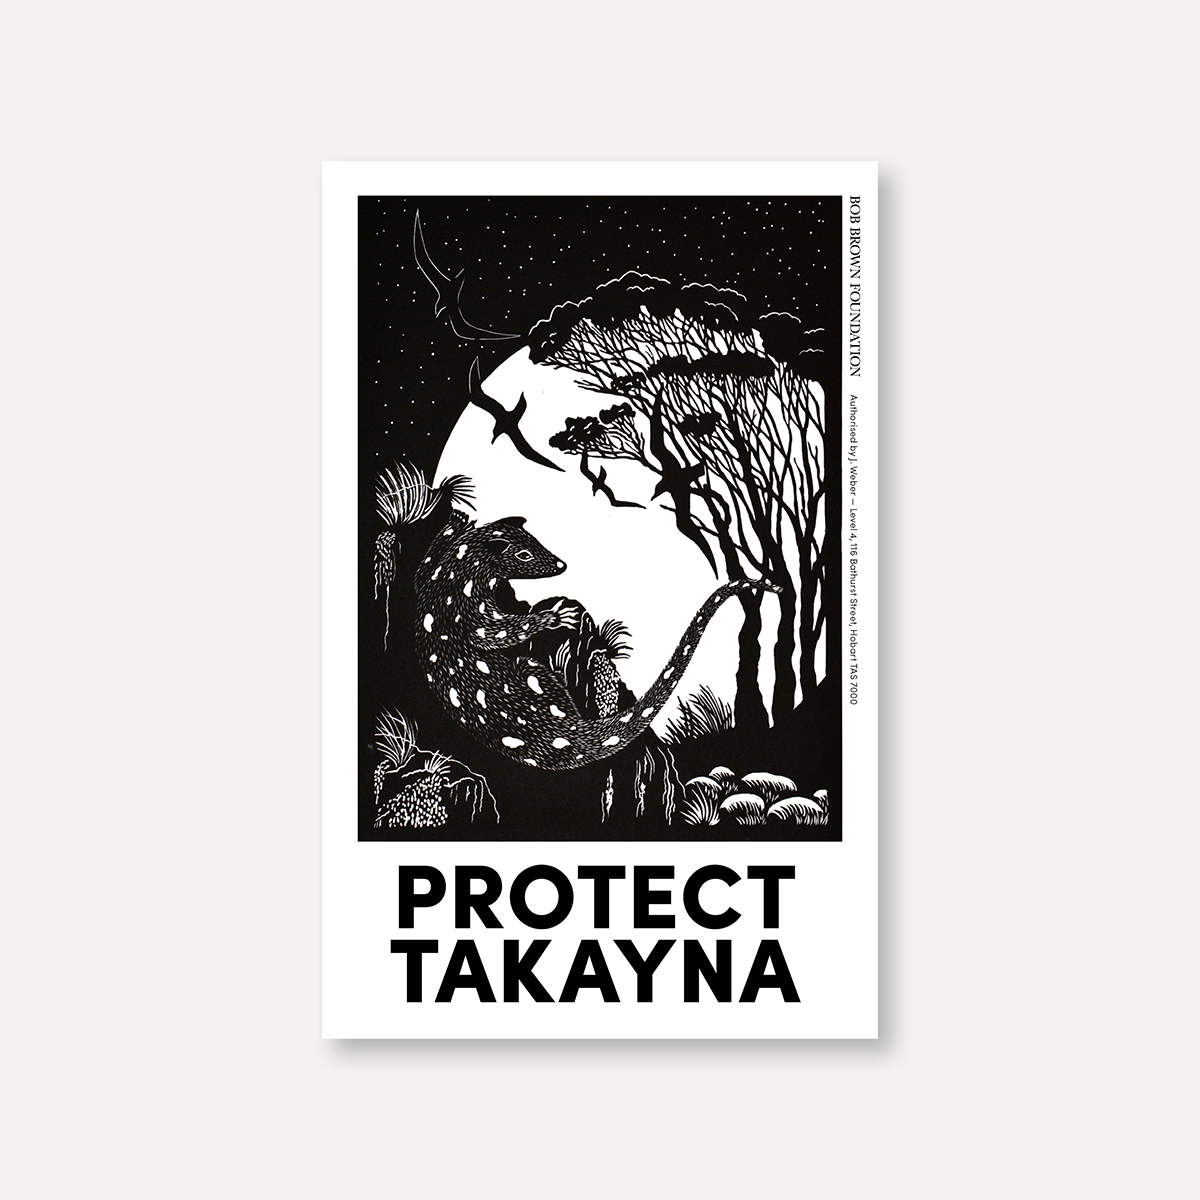 Protect takayna – Anne Conran Quoll design sticker